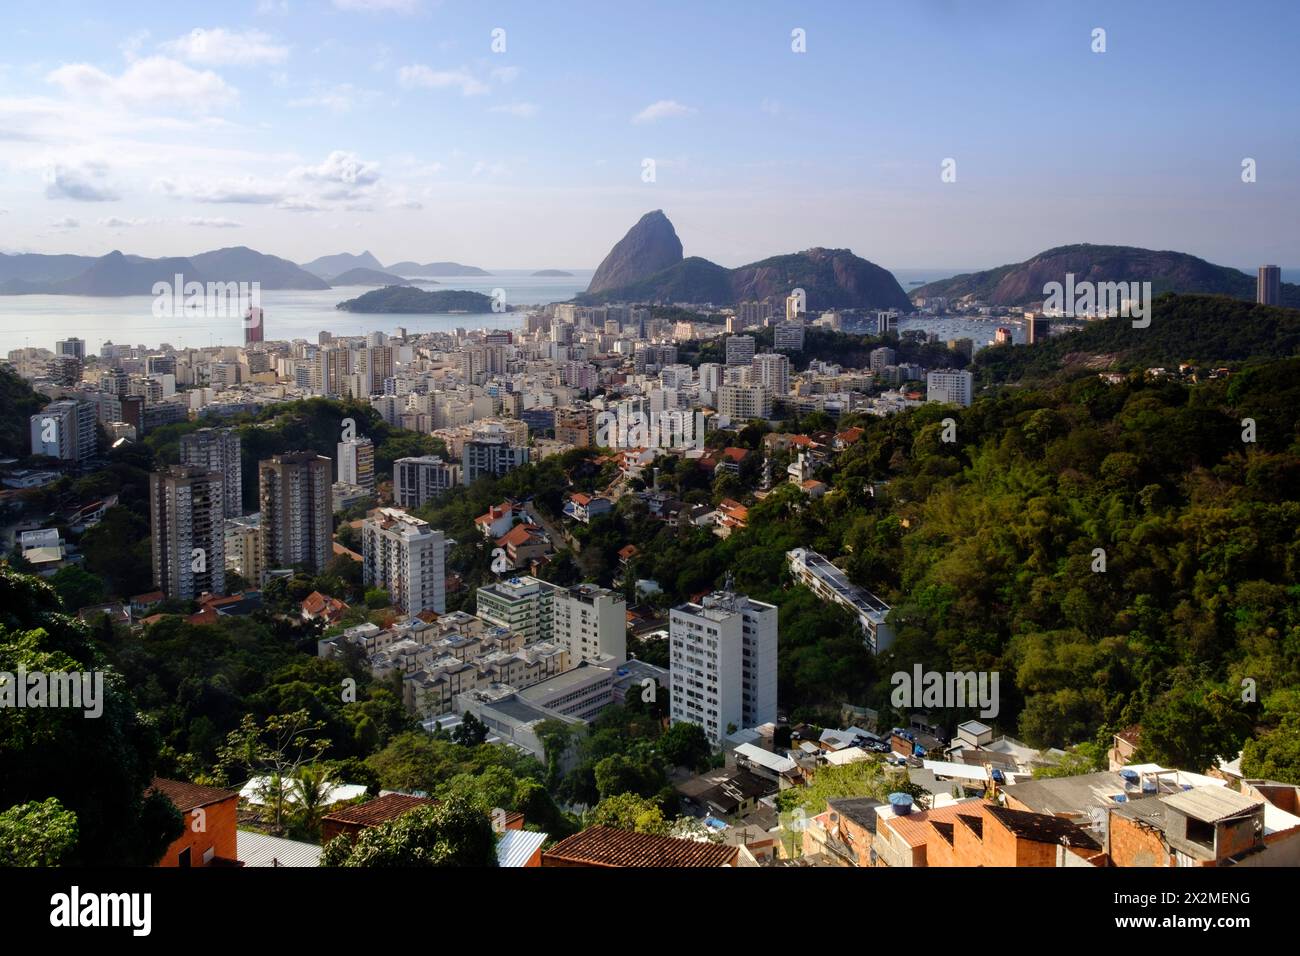 Géographie / voyage, Brésil, Rio de Janeiro, quartier résidentiel de Botafogo, ADDITIONAL-RIGHTS-LEARANCE-INFO-NOT-AVAILABLE Banque D'Images